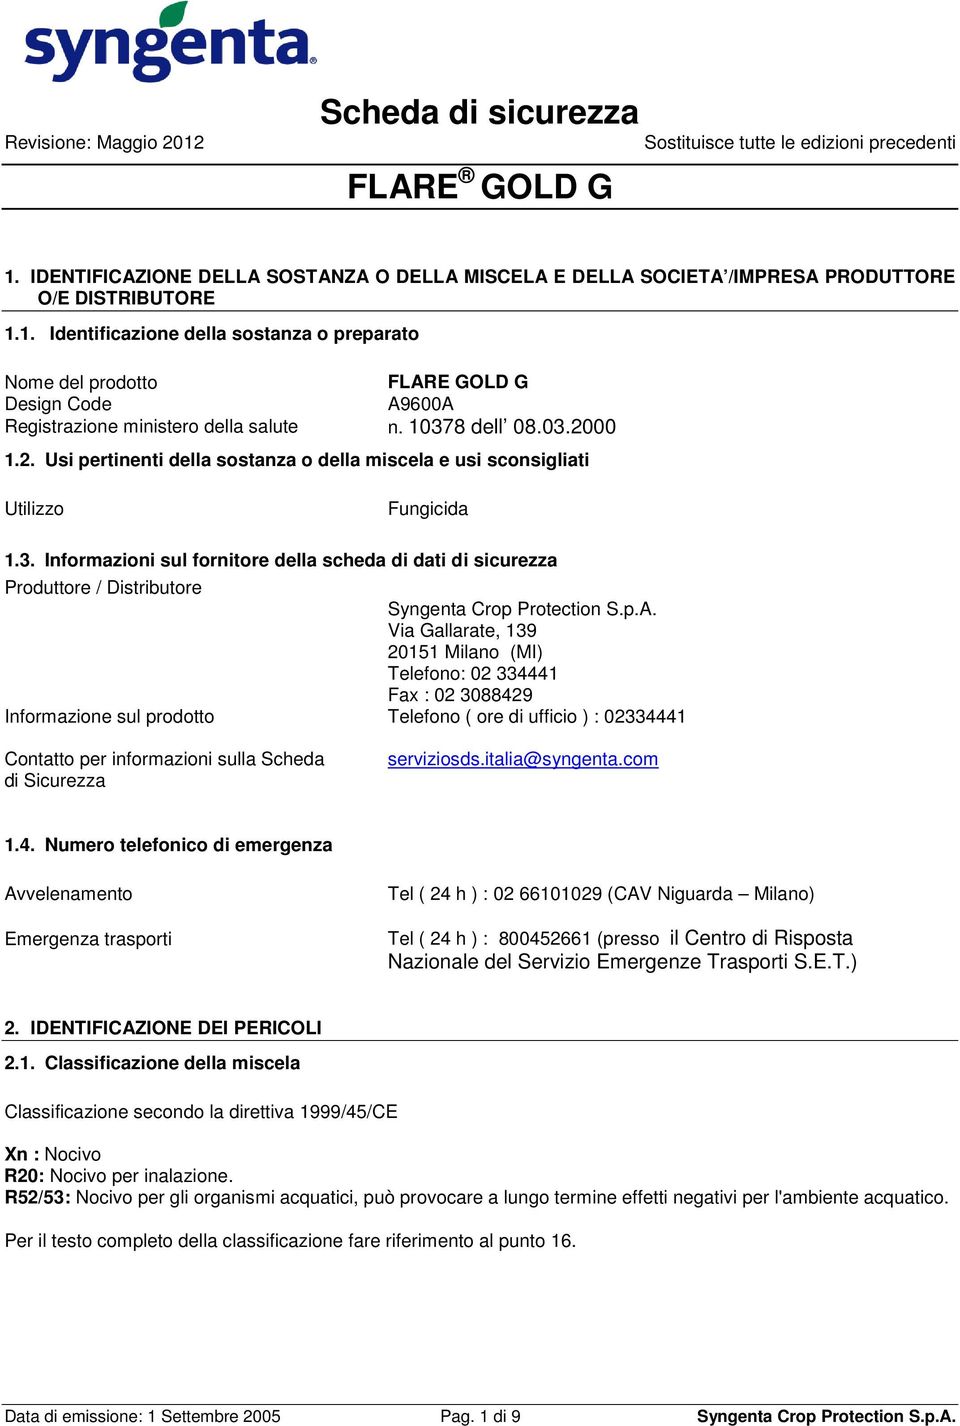 p.A. Via Gallarate, 139 20151 Milano (MI) Telefono: 02 334441 Fax : 02 3088429 Informazione sul prodotto Telefono ( ore di ufficio ) : 02334441 Contatto per informazioni sulla Scheda di Sicurezza